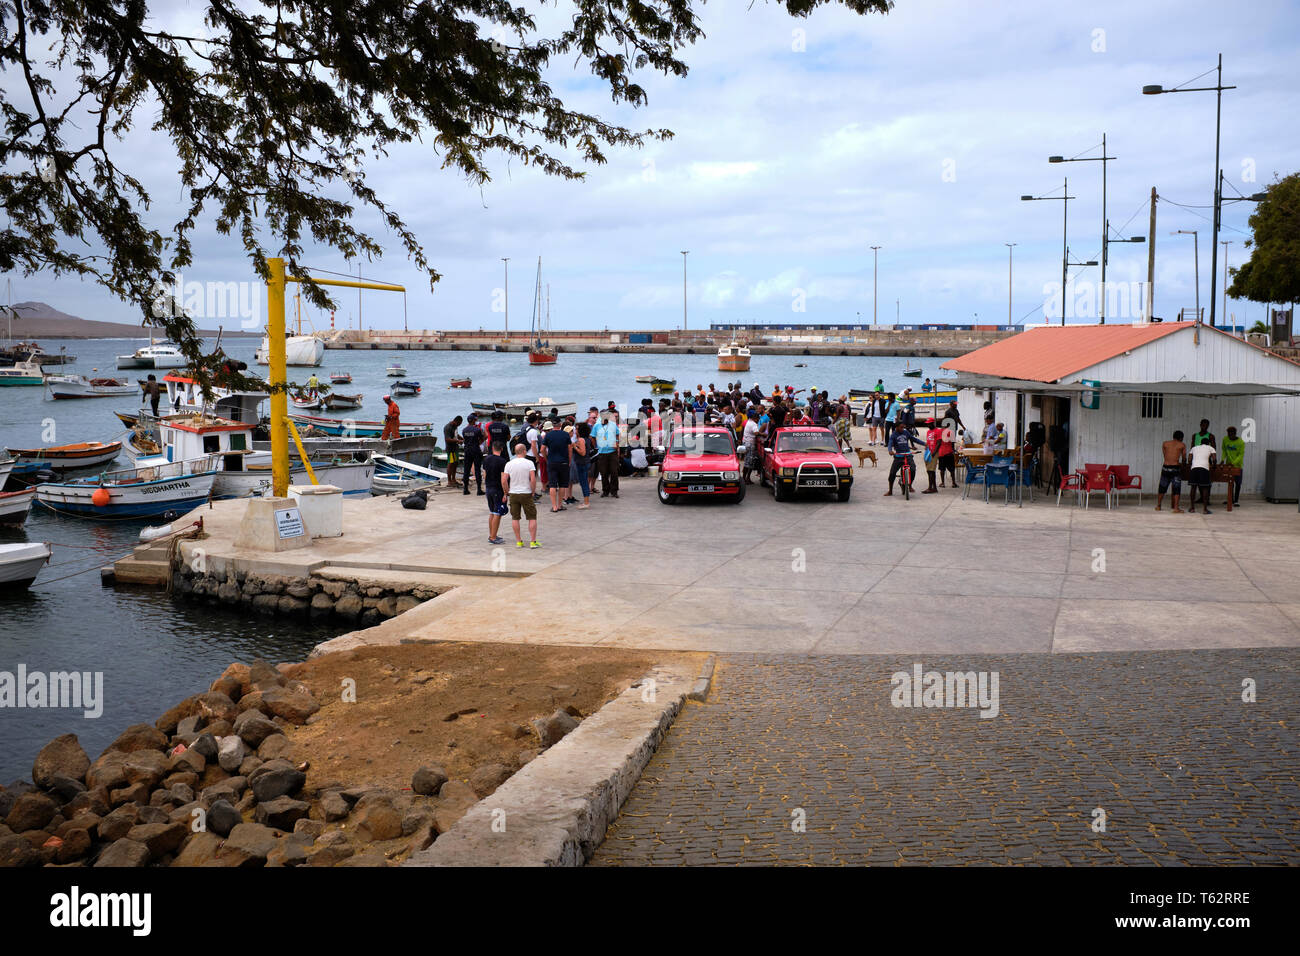 Outdoor Fischmarkt auf dem Pier von einem kleinen Fischerdorf, Stadt Palmeria, Baía de Palmeira, Insel Sal, Kap Verde, Afrika Stockfoto